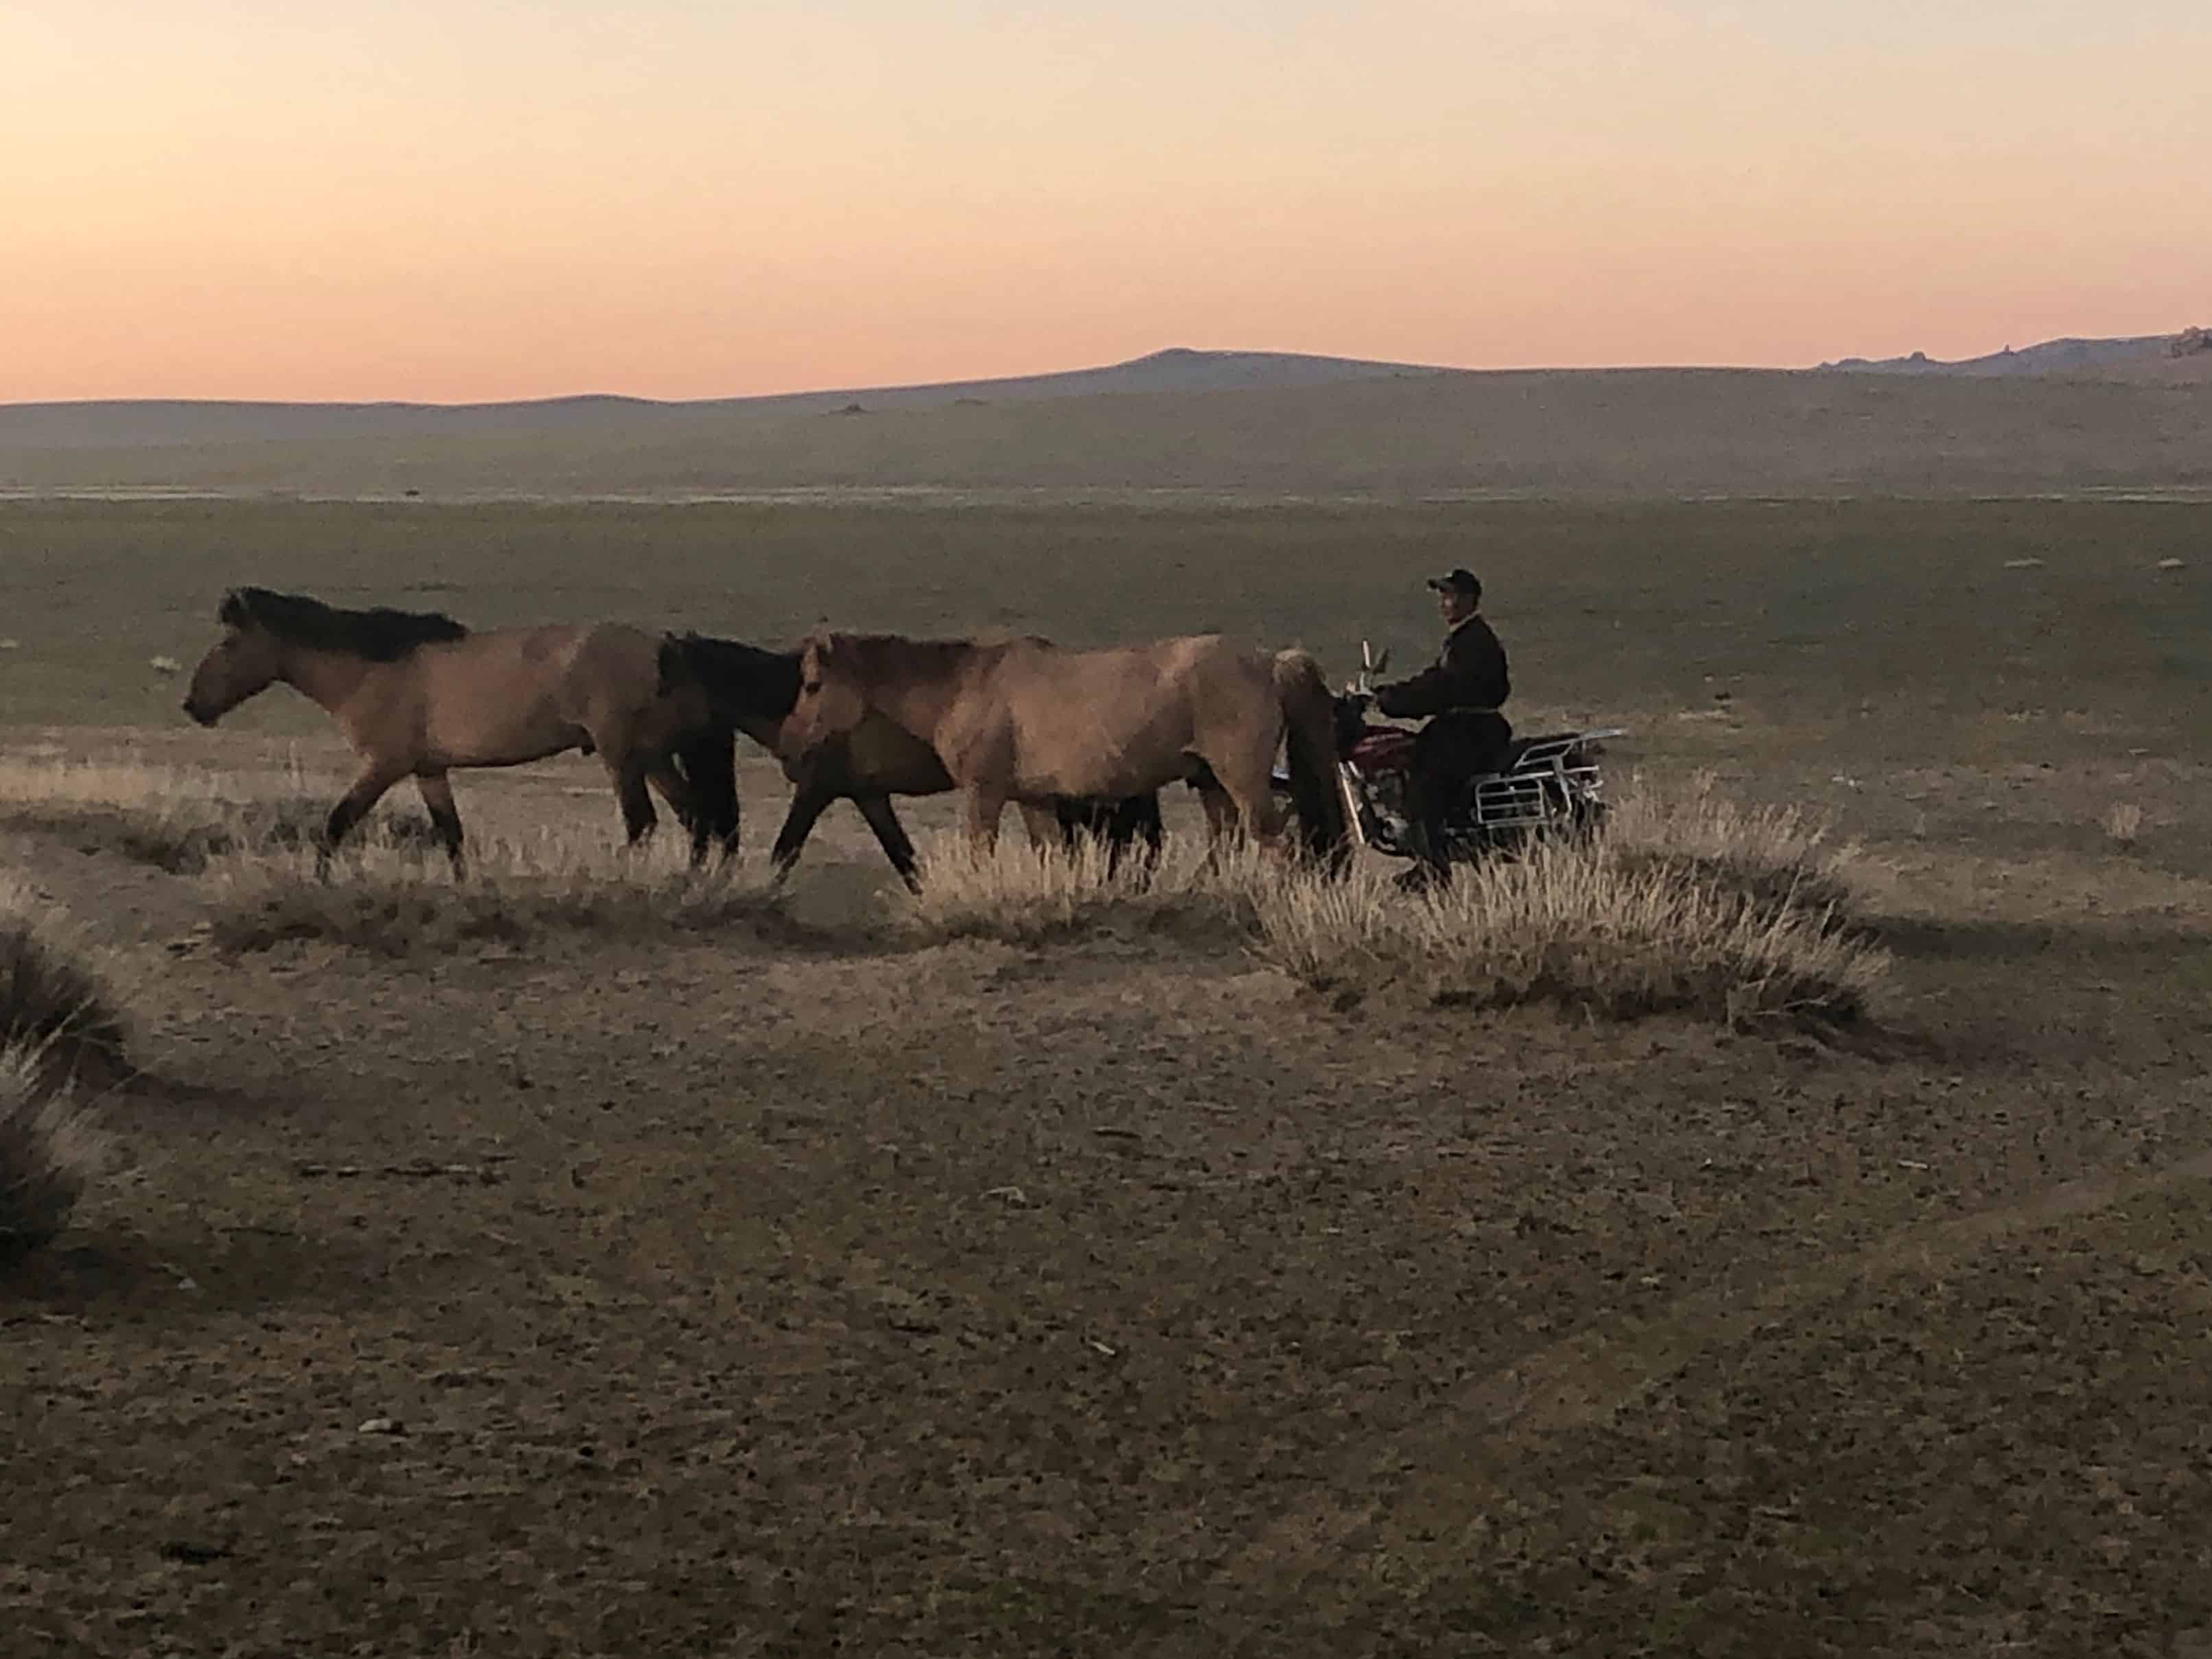 Nomad rounding horses